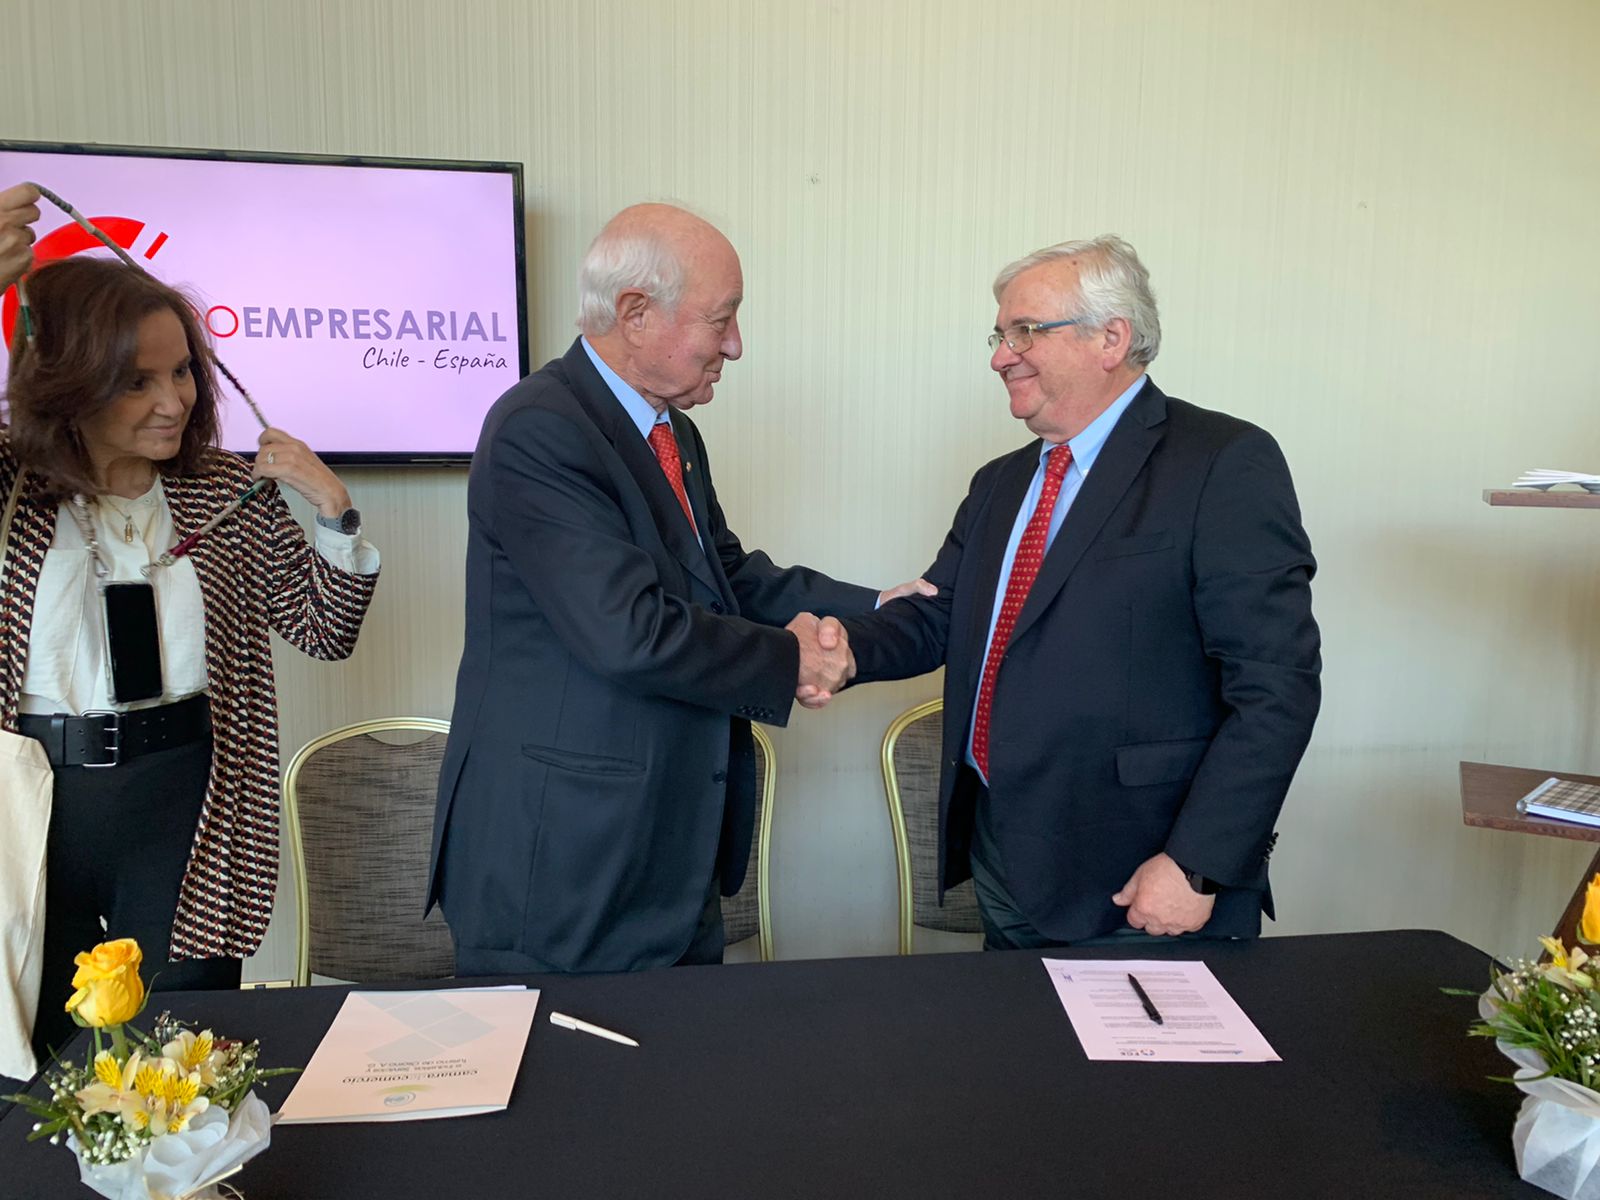 Codeproval y Fundación Chile-España firmaron convenio de colaboración